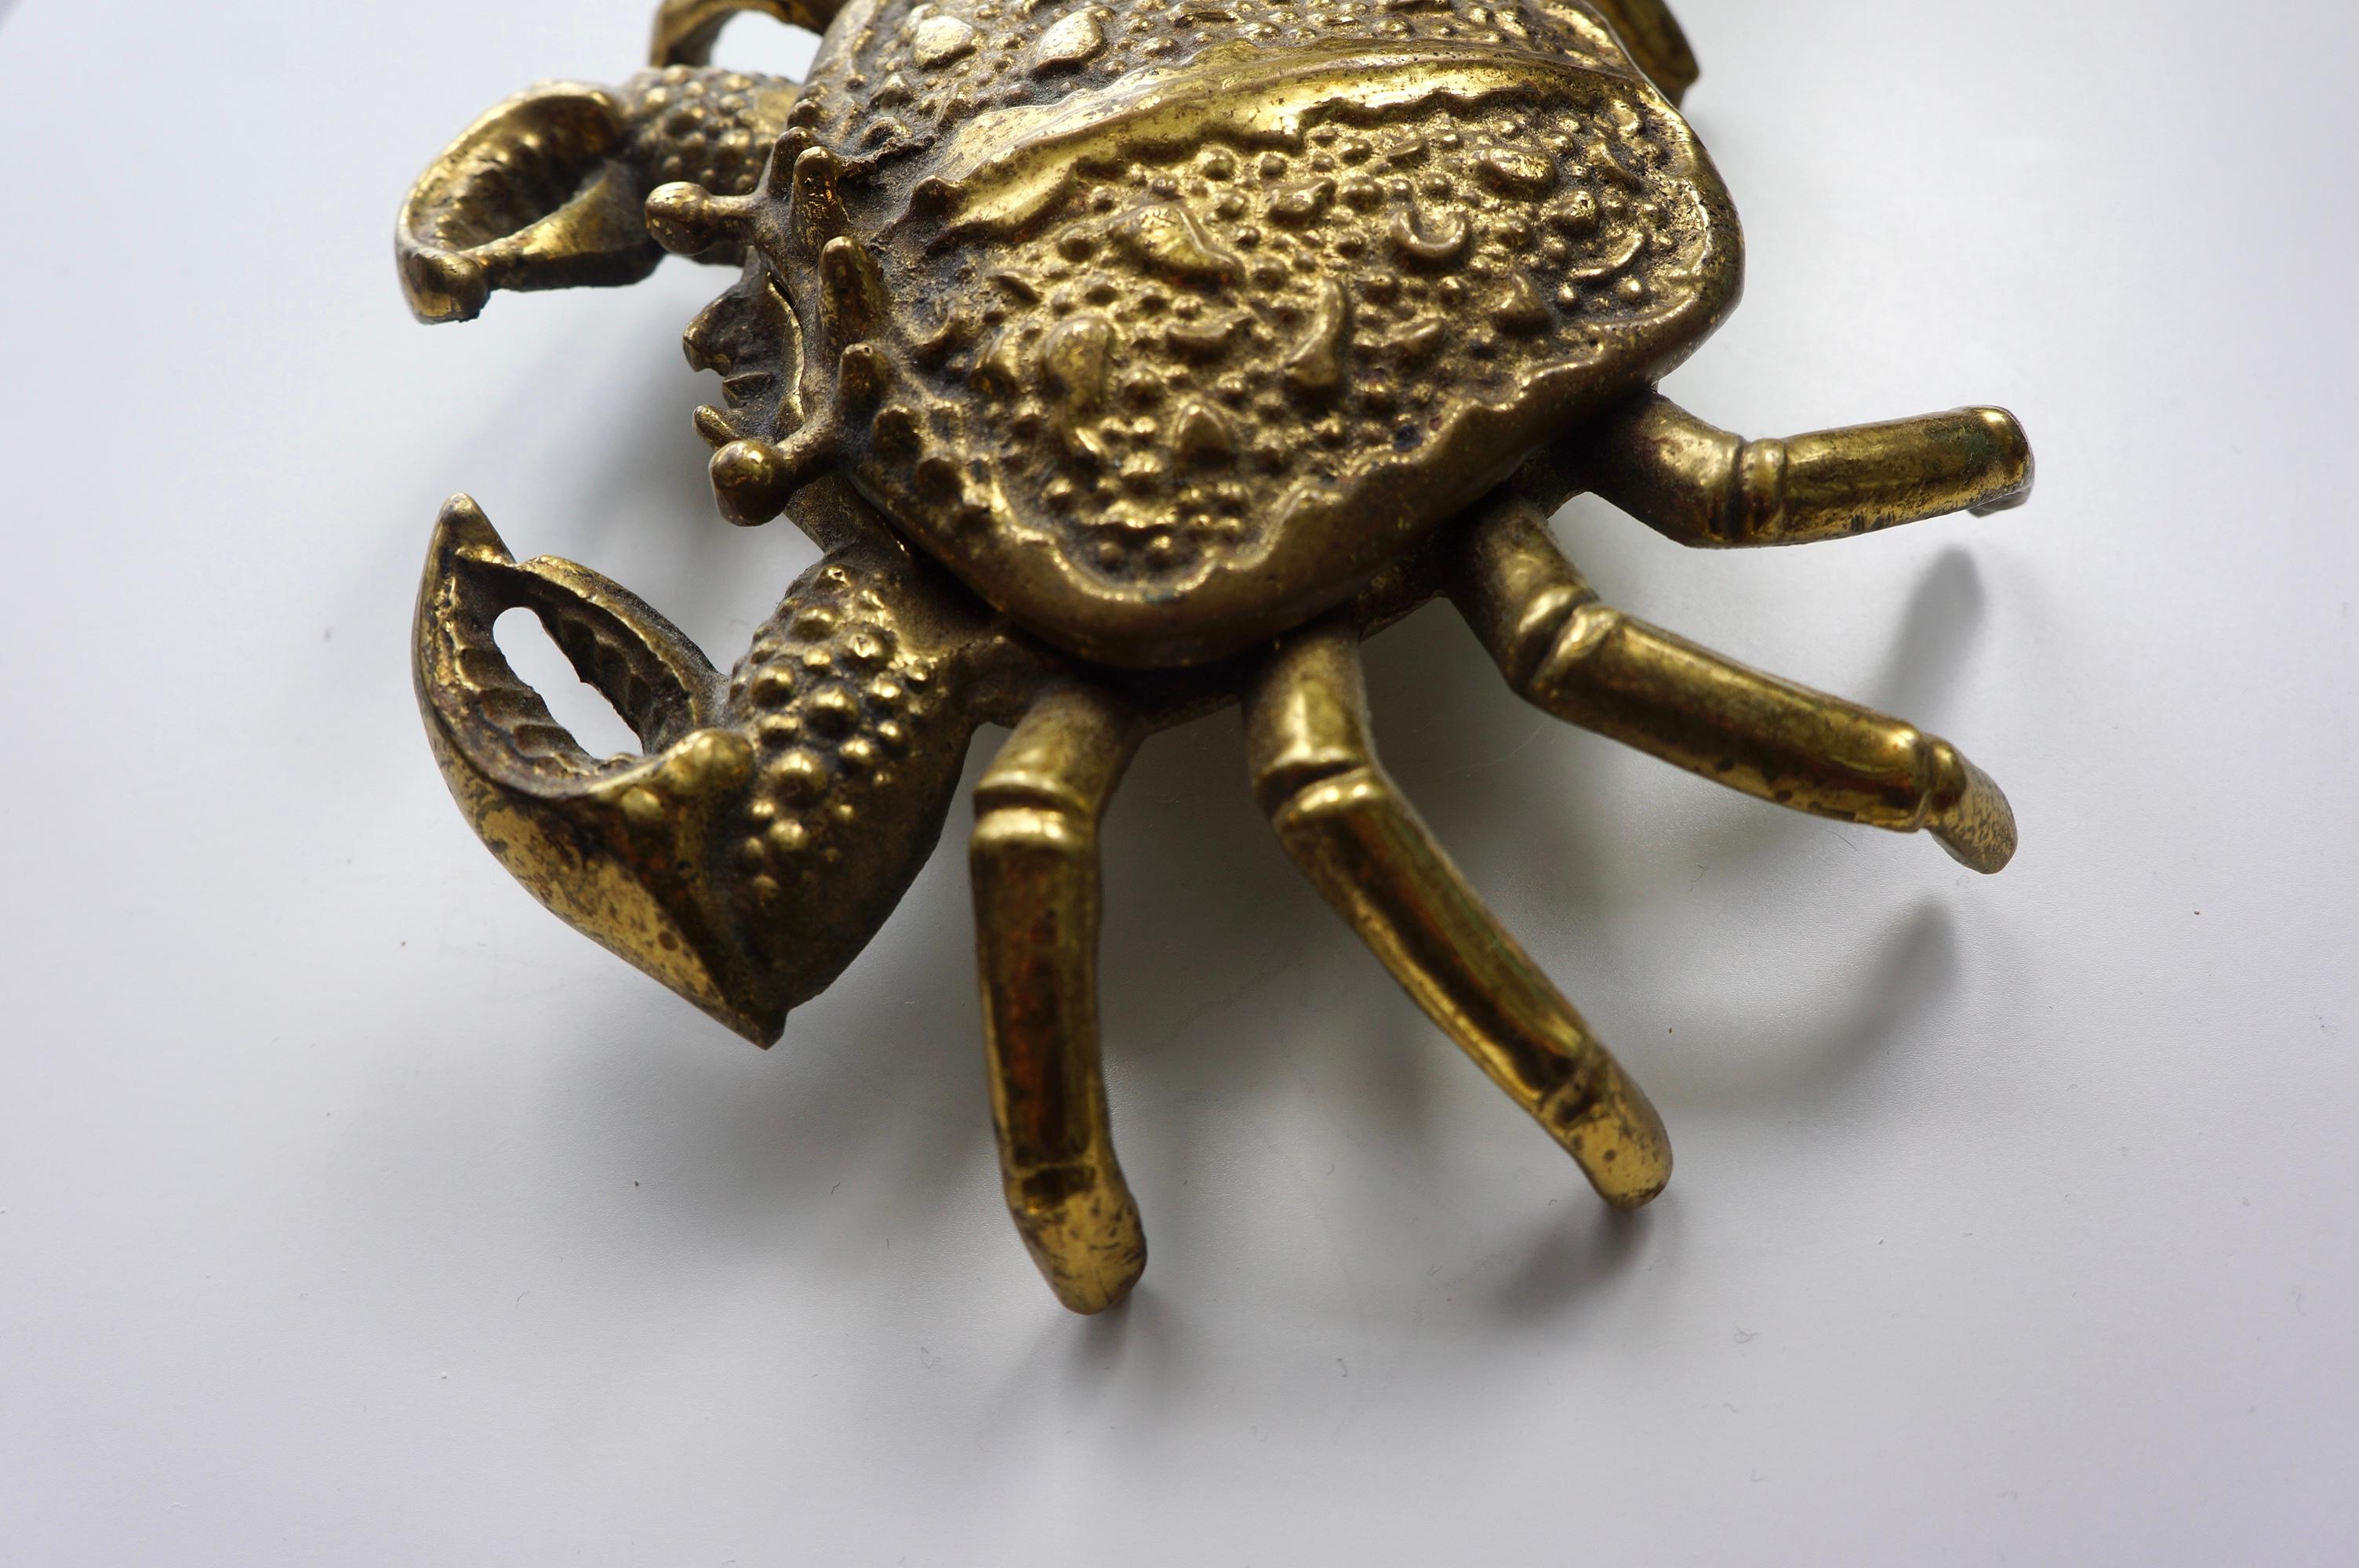 Dekoratives Objekt und Aschenbecher in Form einer Krabbe aus Messing  (Patiniert)